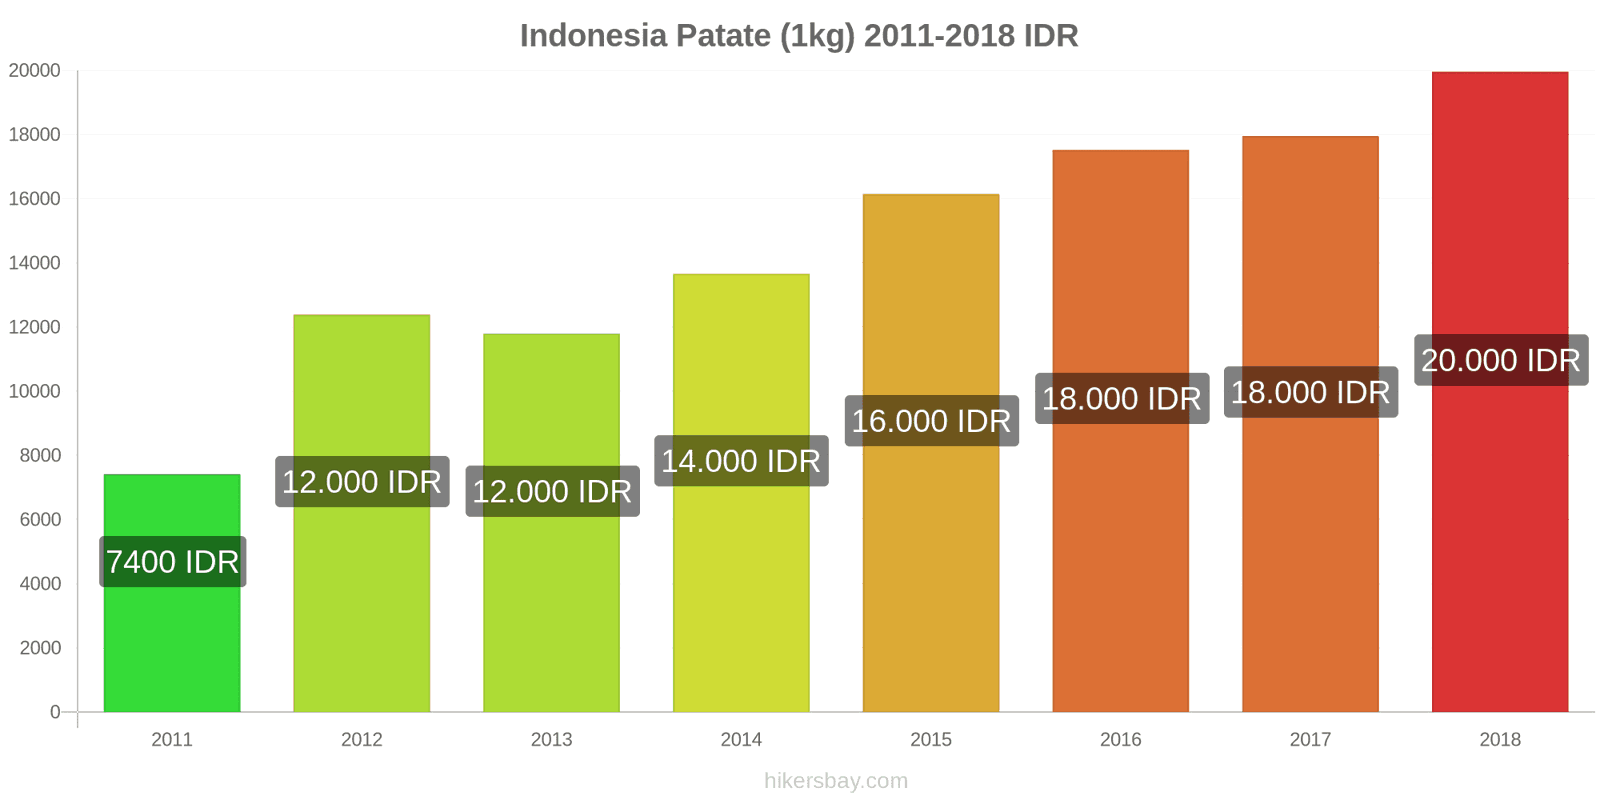 Indonesia cambi di prezzo Patate (1kg) hikersbay.com